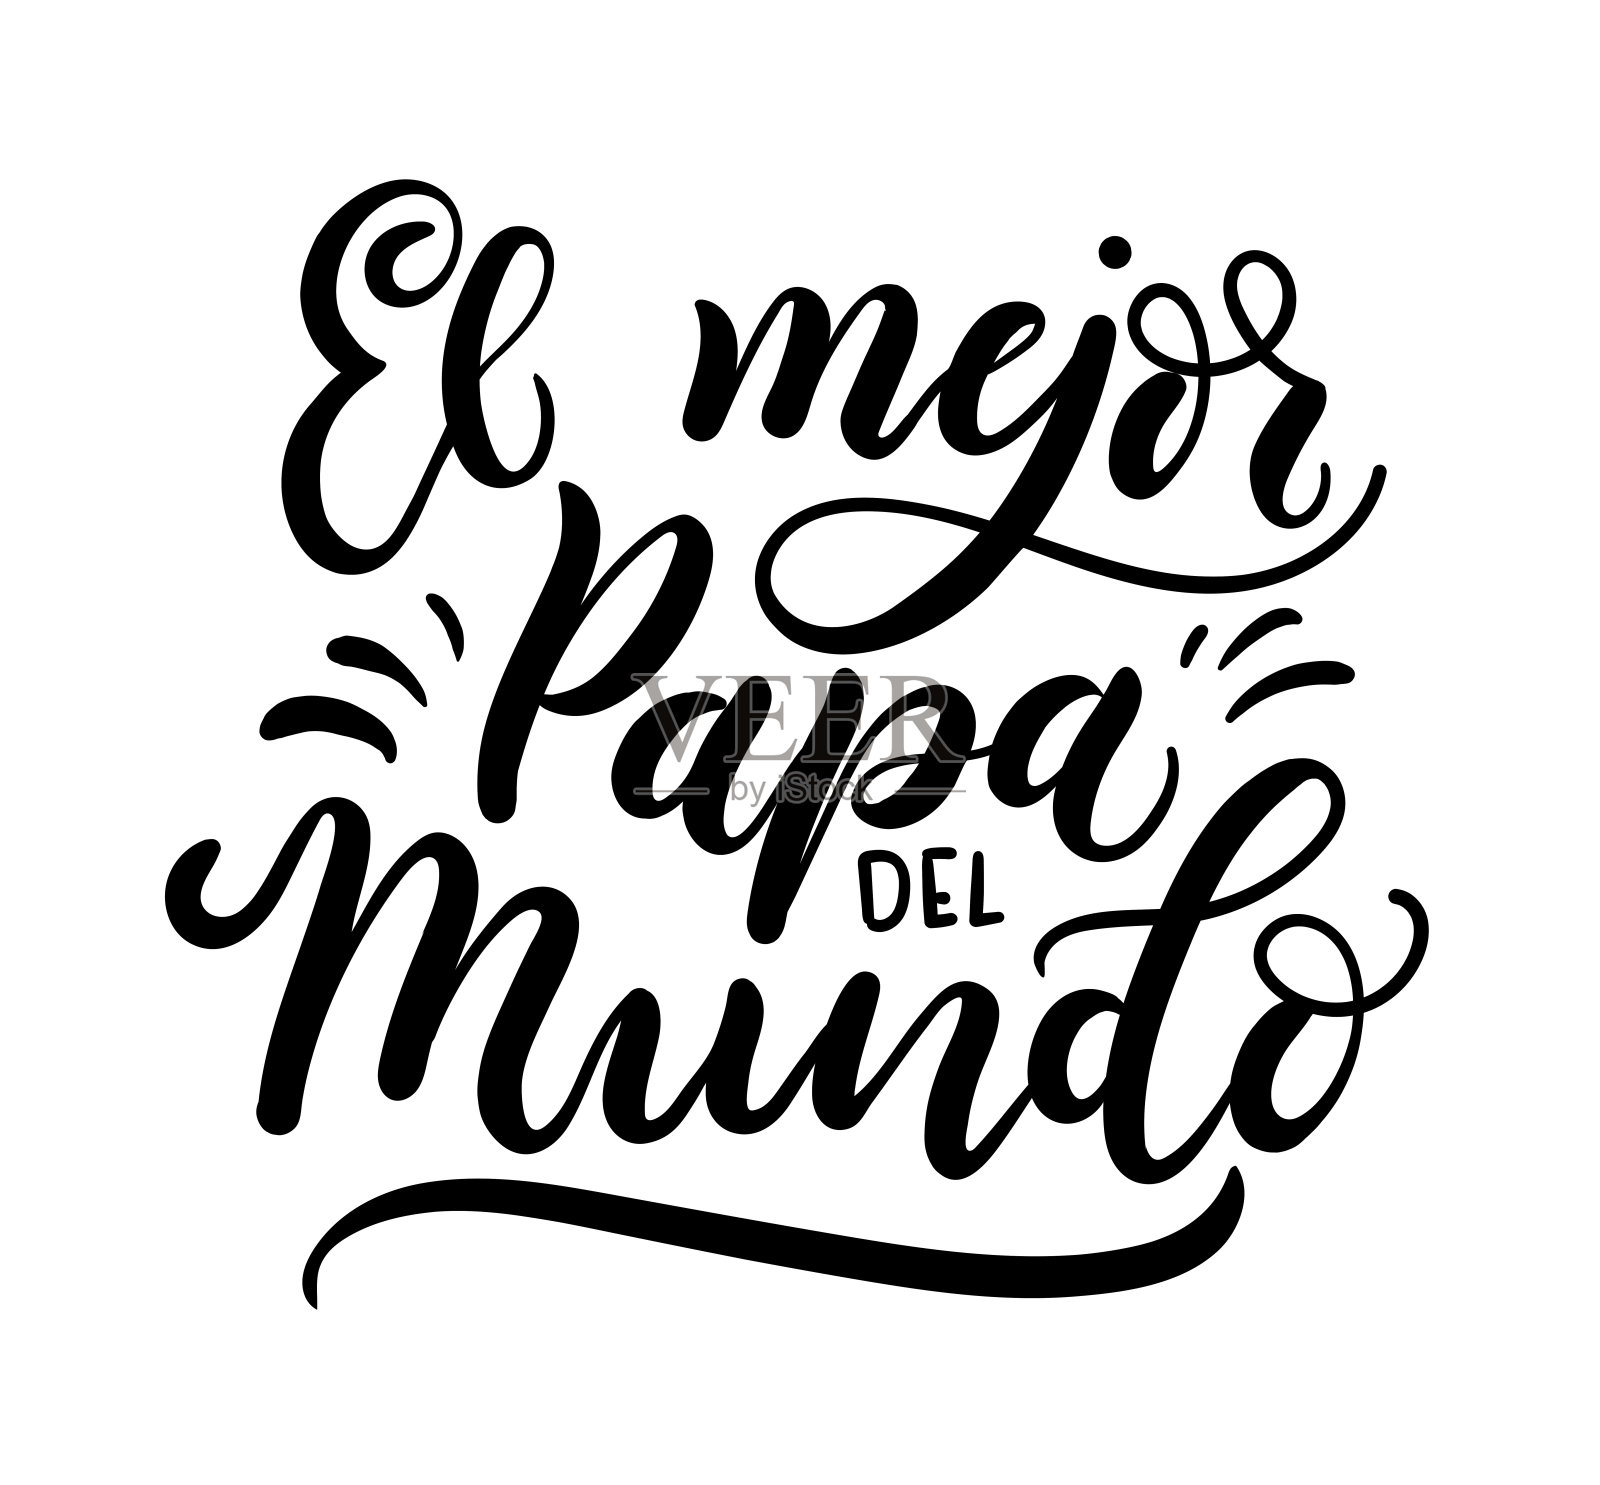 世界上最好的教皇西班牙语铭文的意思是“世界上最好的父亲”。设计元素图片